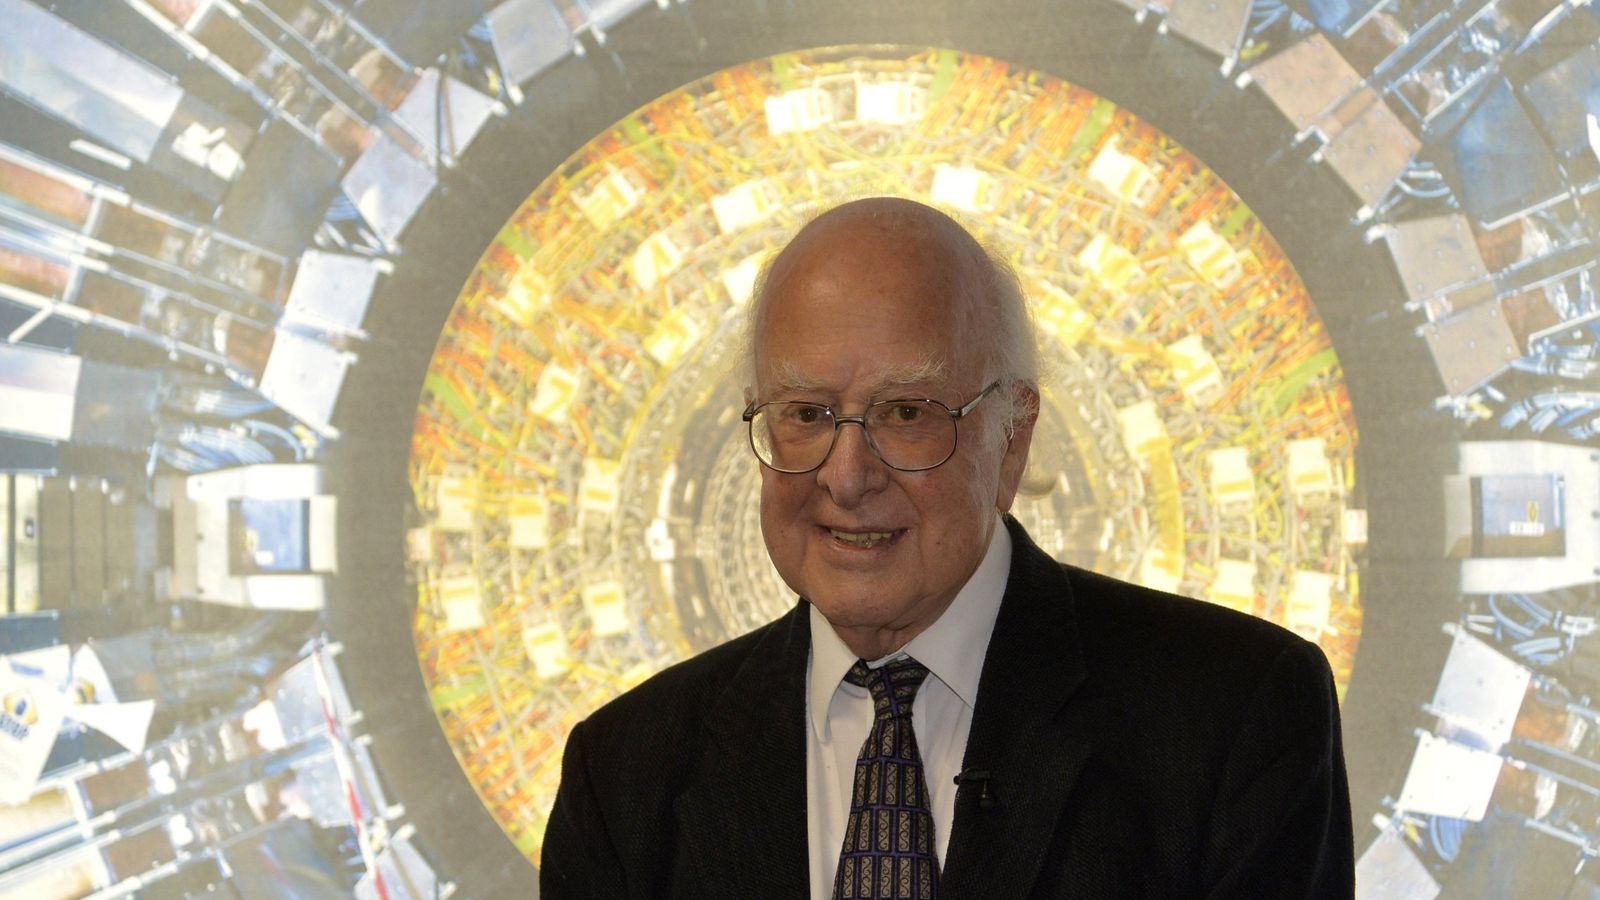 El científico Peter Higgs posando junto a una fotografía del detector Atlas del LHC, uno de los instrumentos que confirmaron su teoría del boson de Higgs.